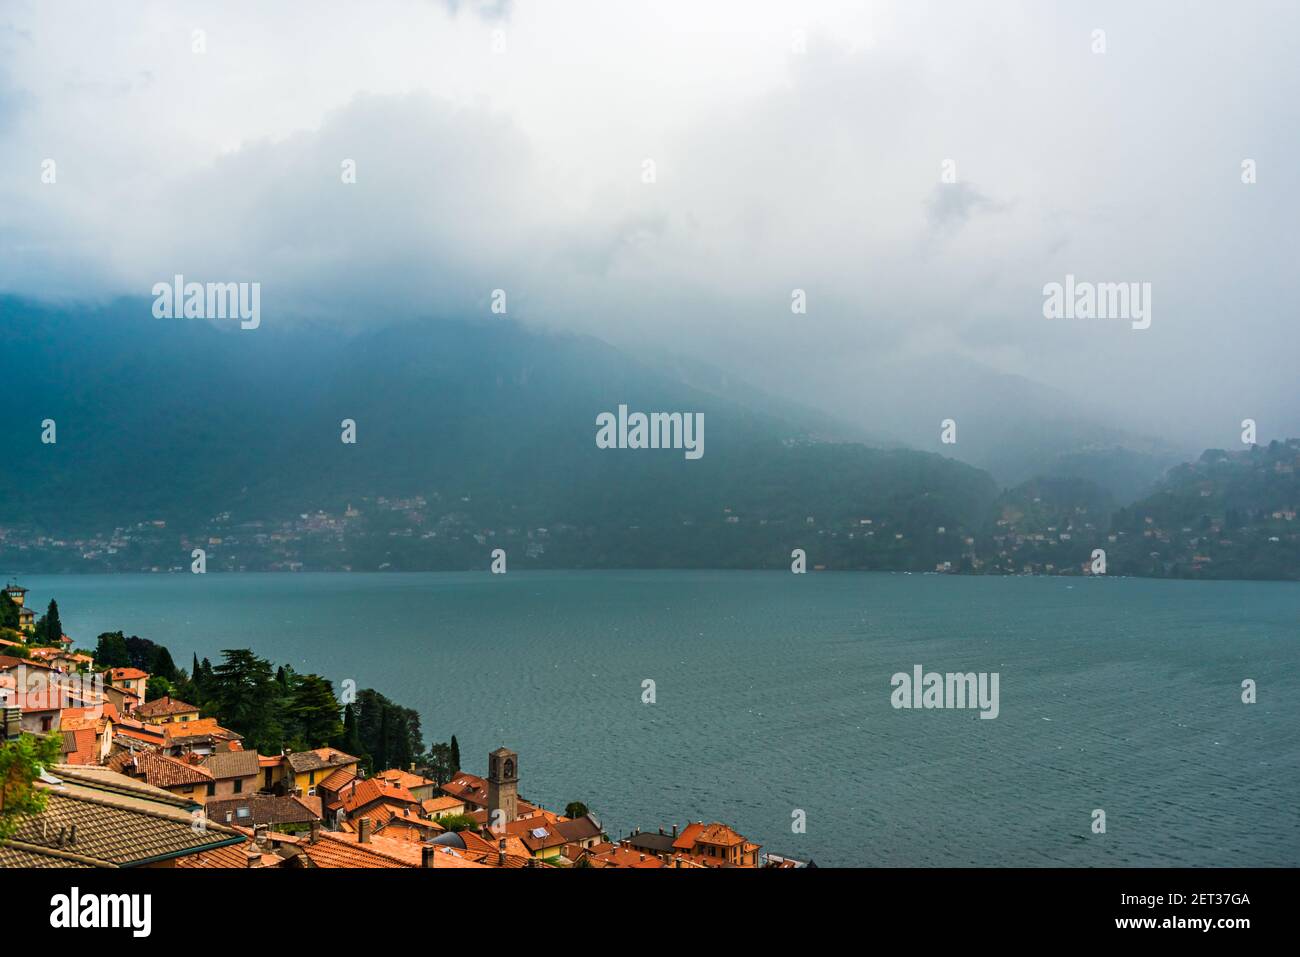 Lake Como Italy under heavy rain Stock Photo - Alamy